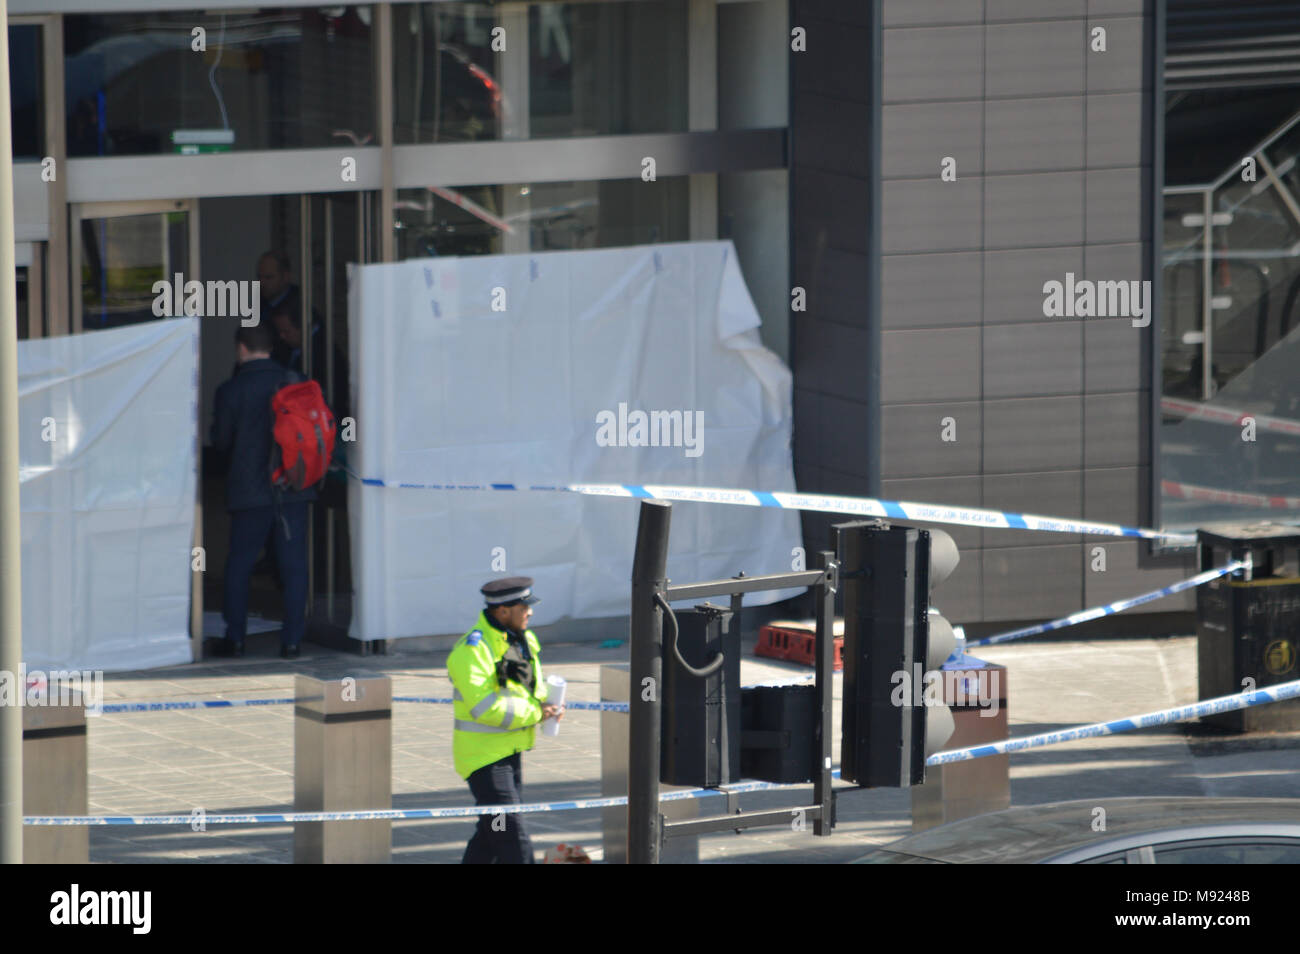 Londra, UK, 21 marzo 2018 cordone di polizia per l' assassinio di scena a Stratford Shopping center nella zona est di Londra -. Credito: un Christy/Alamy Live News. Foto Stock